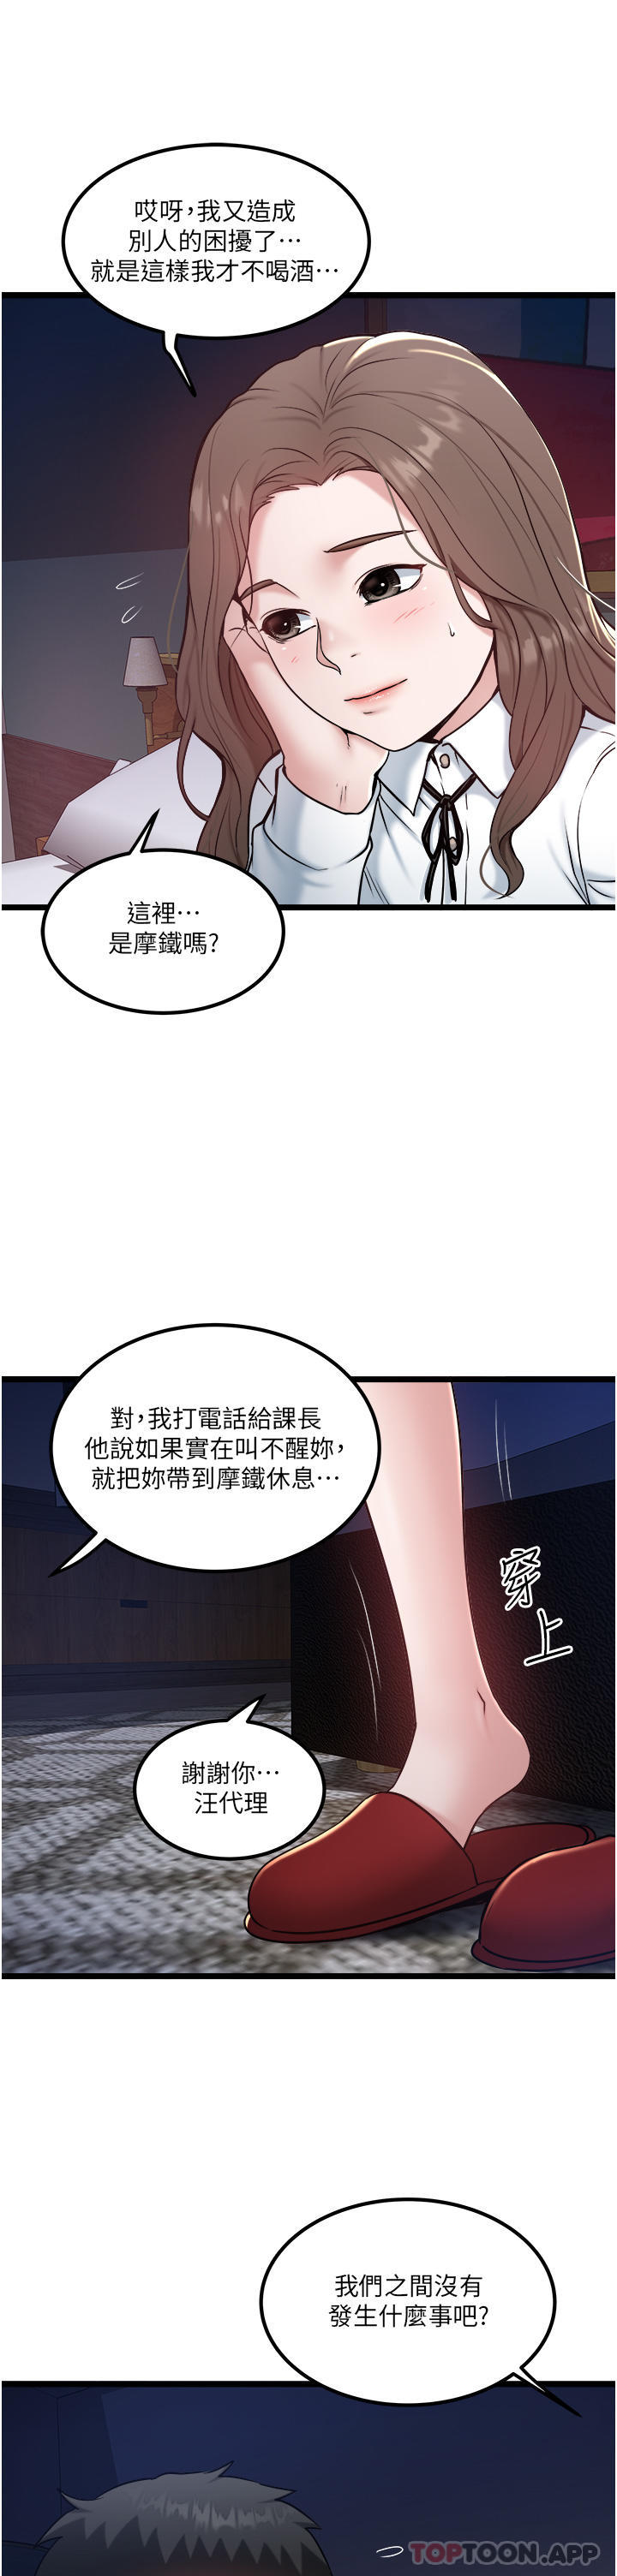 韩国污漫画 私人司機 第35话-身体性向测试 3